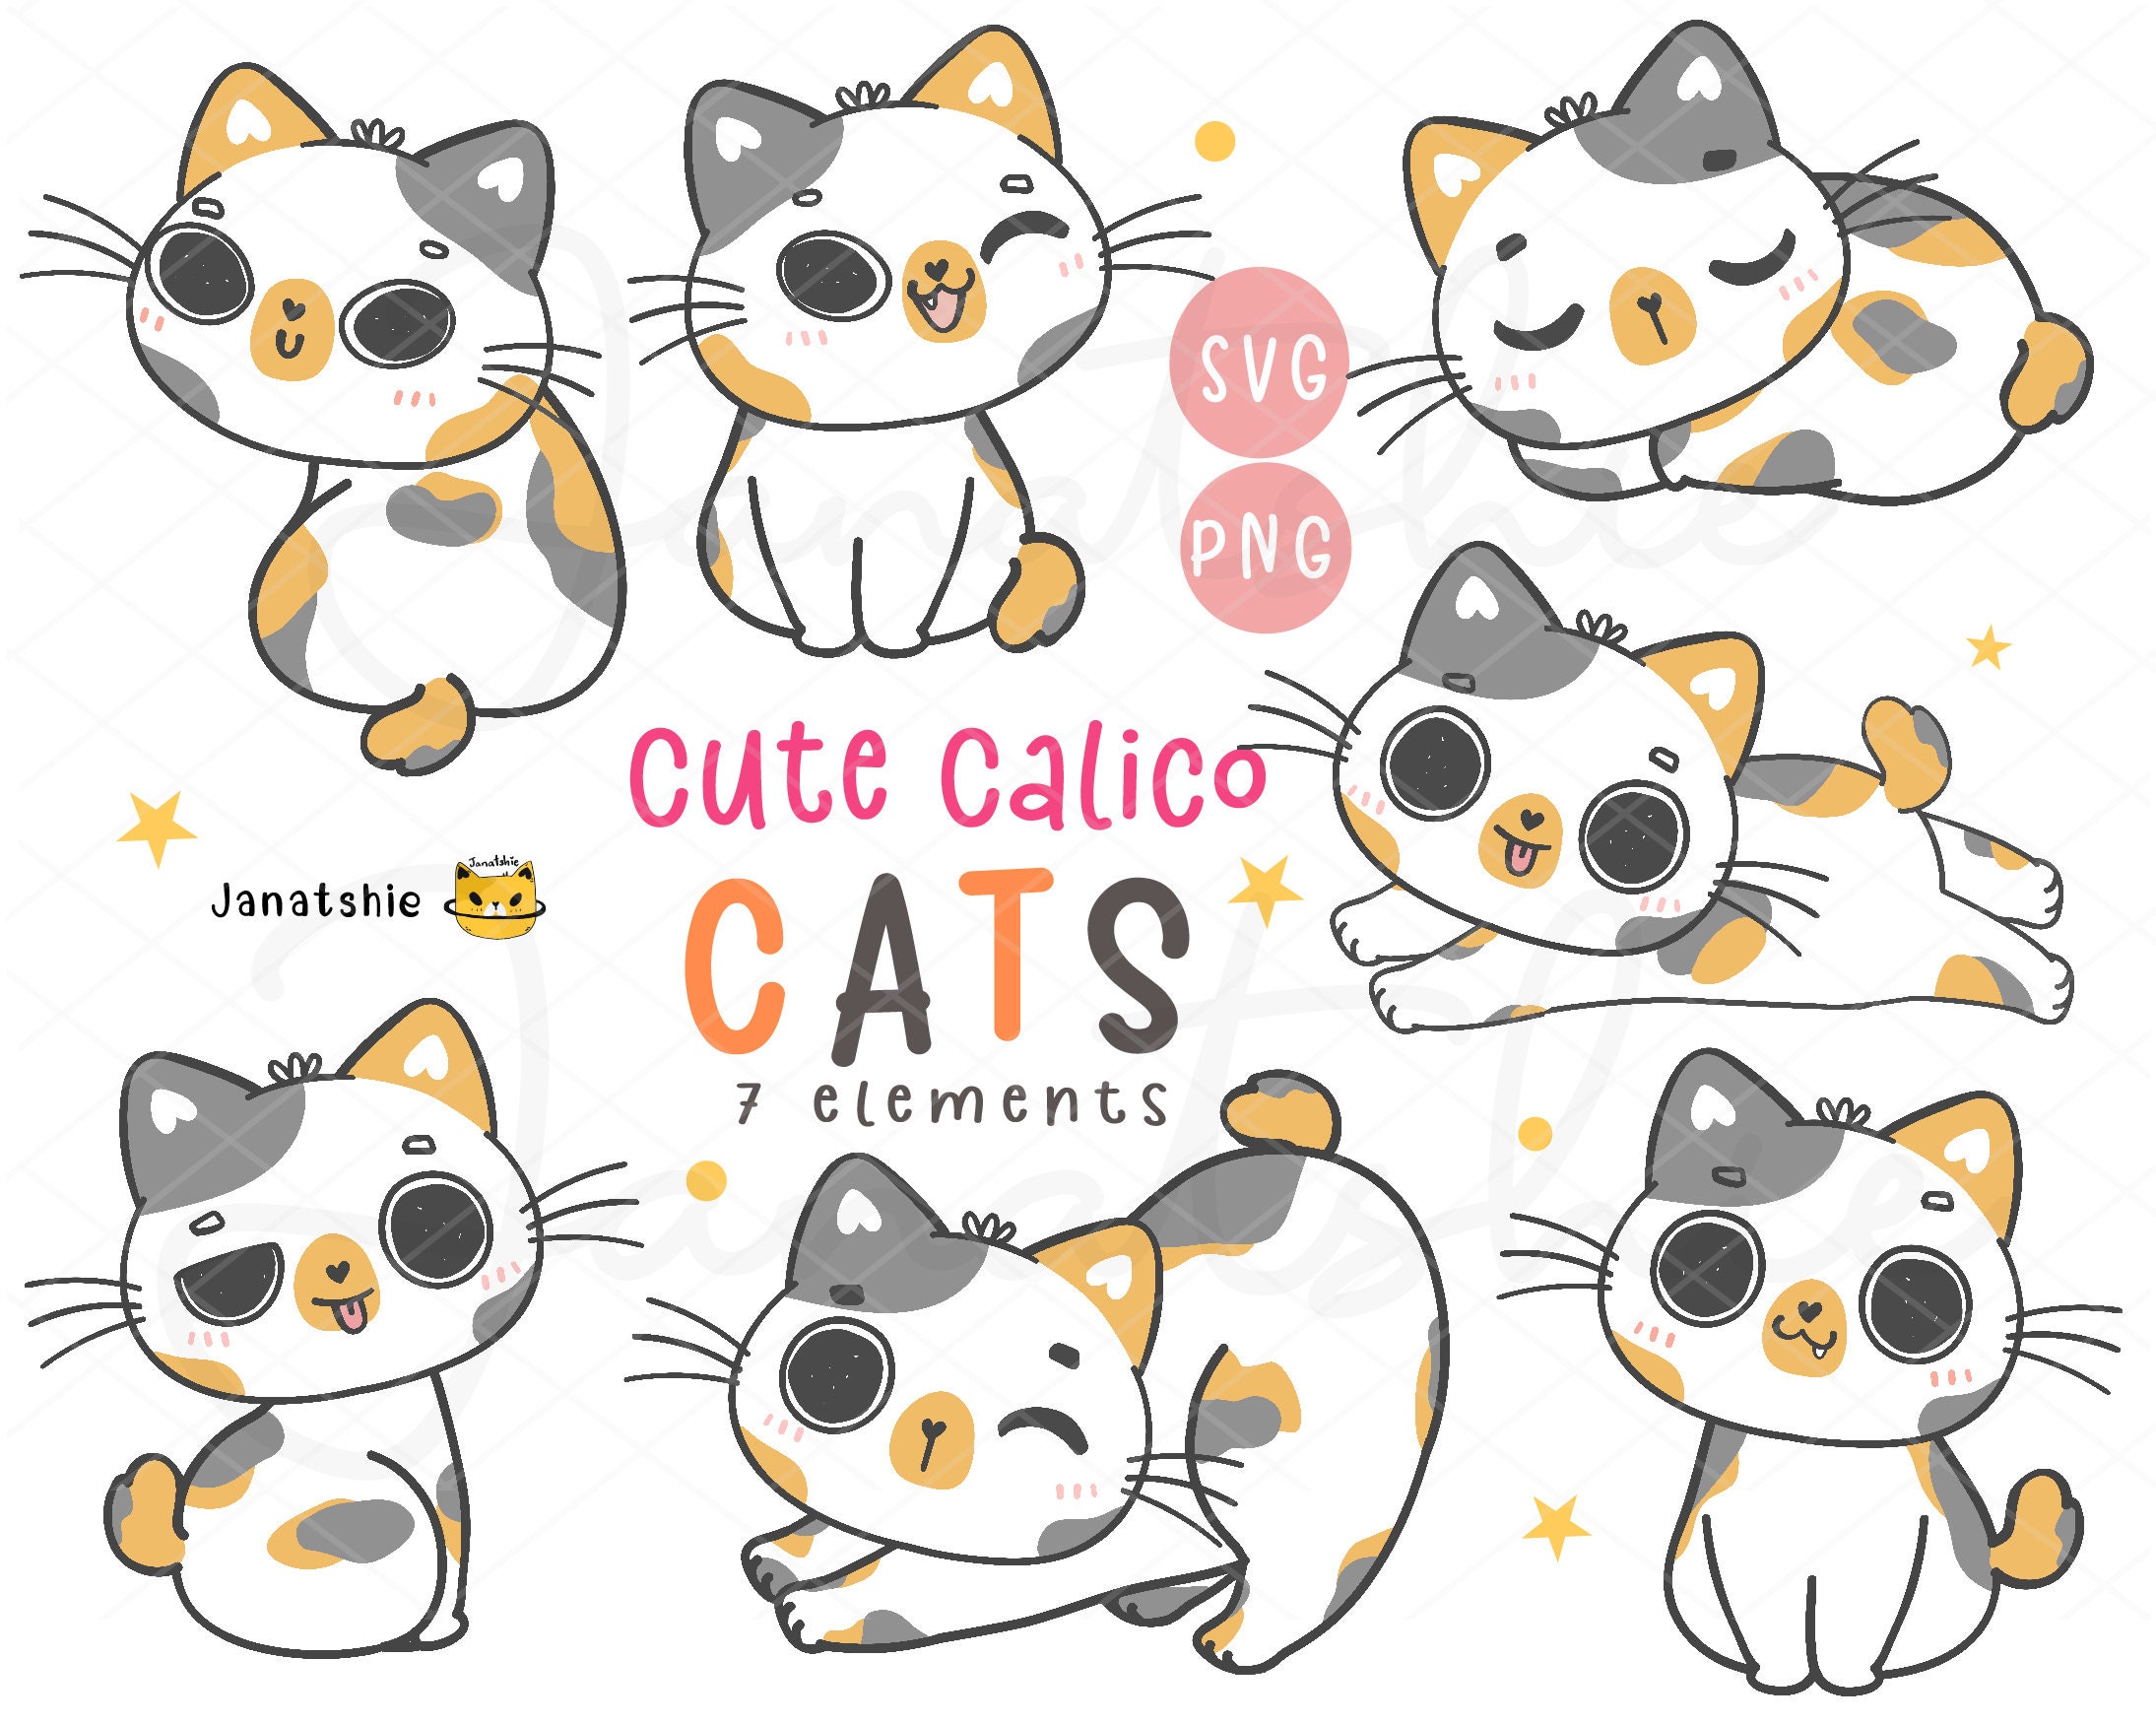  Cute Adorable Peeking Kitty Cat Kitten Cartoon Vinyl